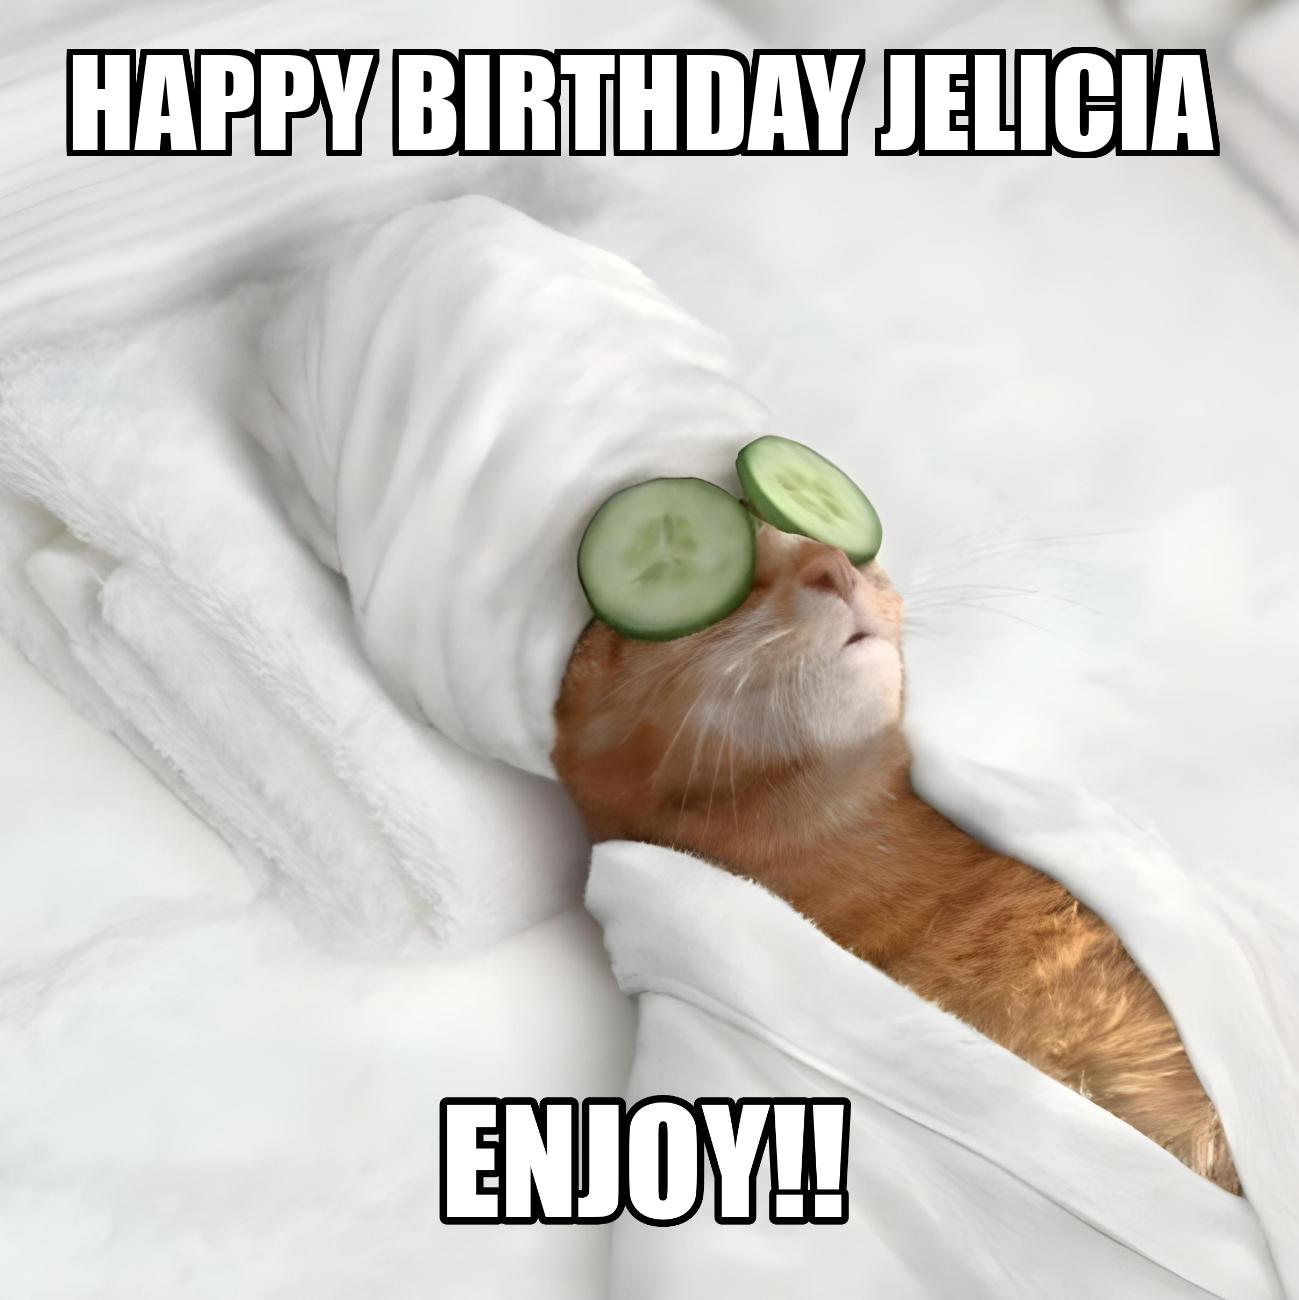 Happy Birthday Jelicia Enjoy Cat Meme